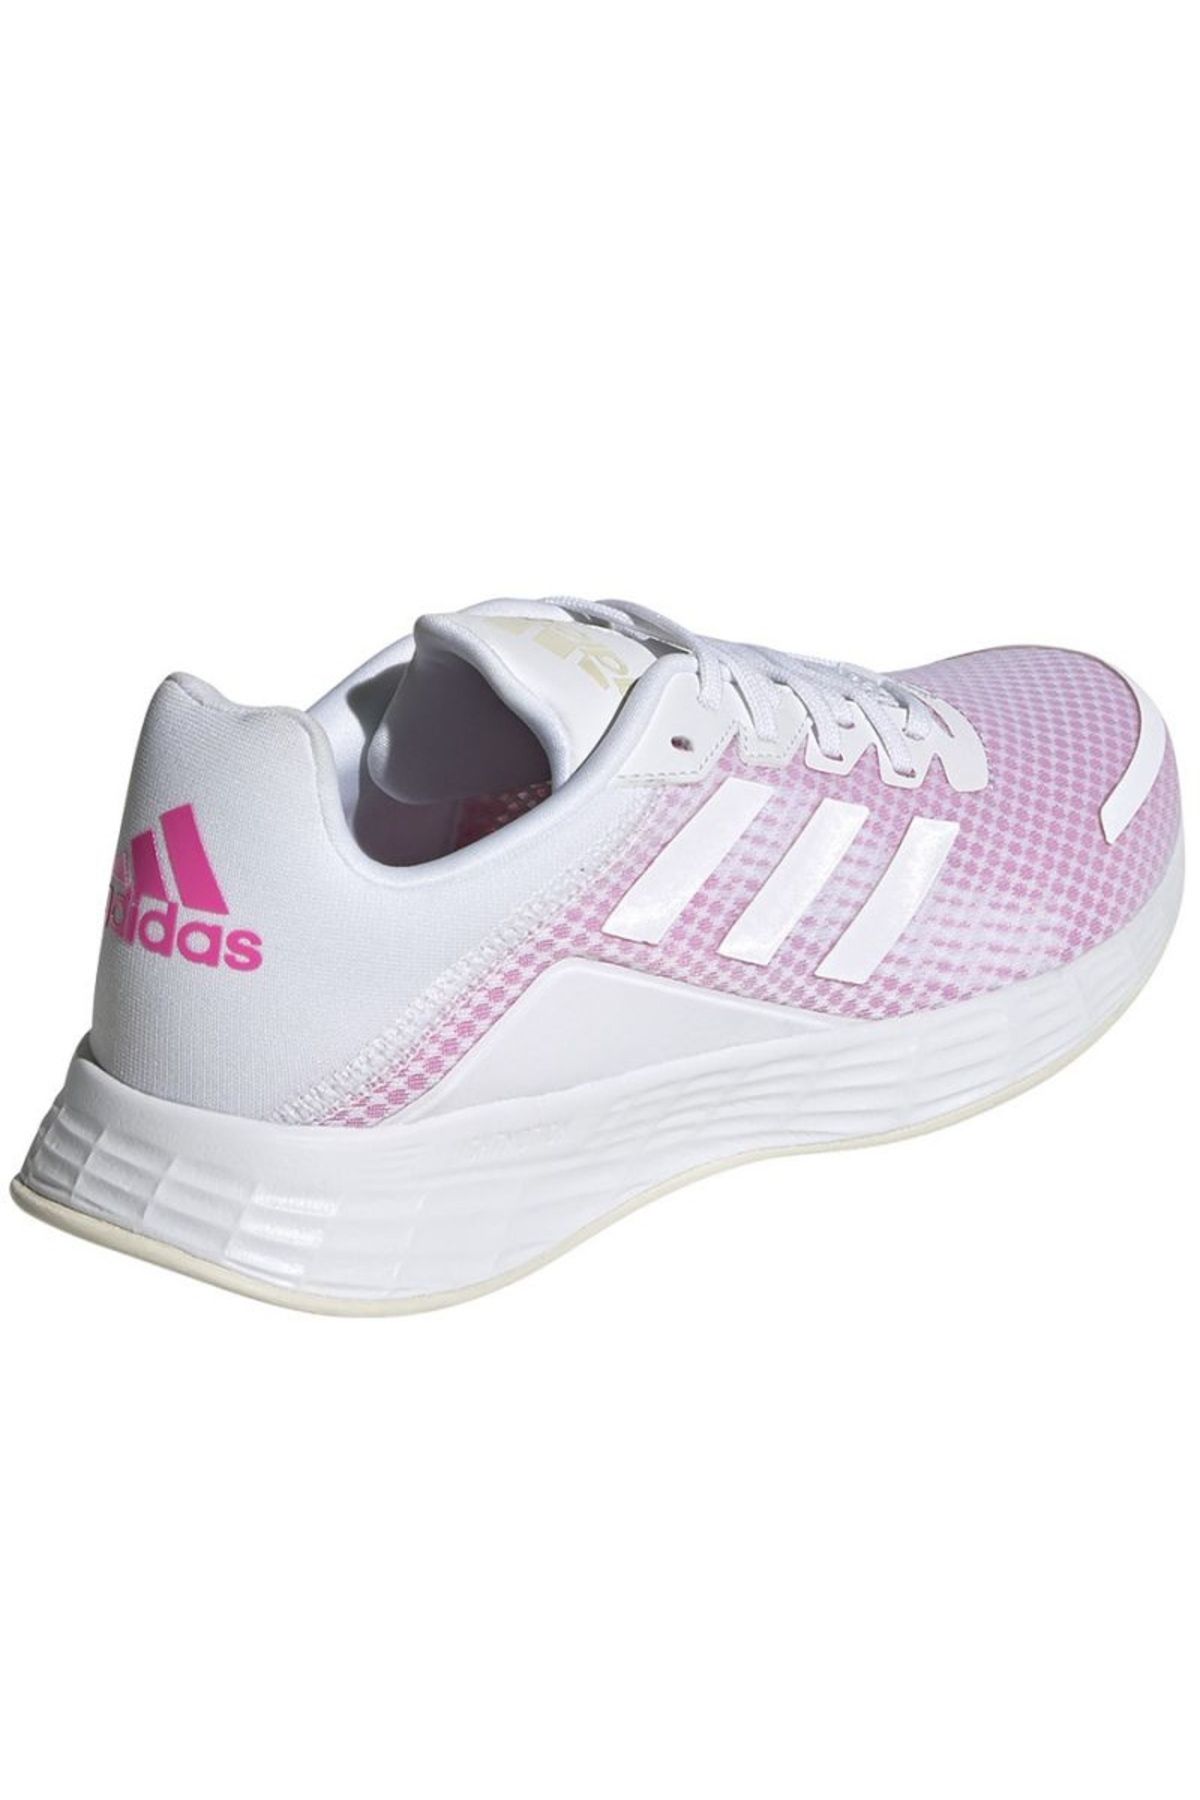 adidas Duramo Sl KW H04631 koşu ayakkabısı beyaz pembe